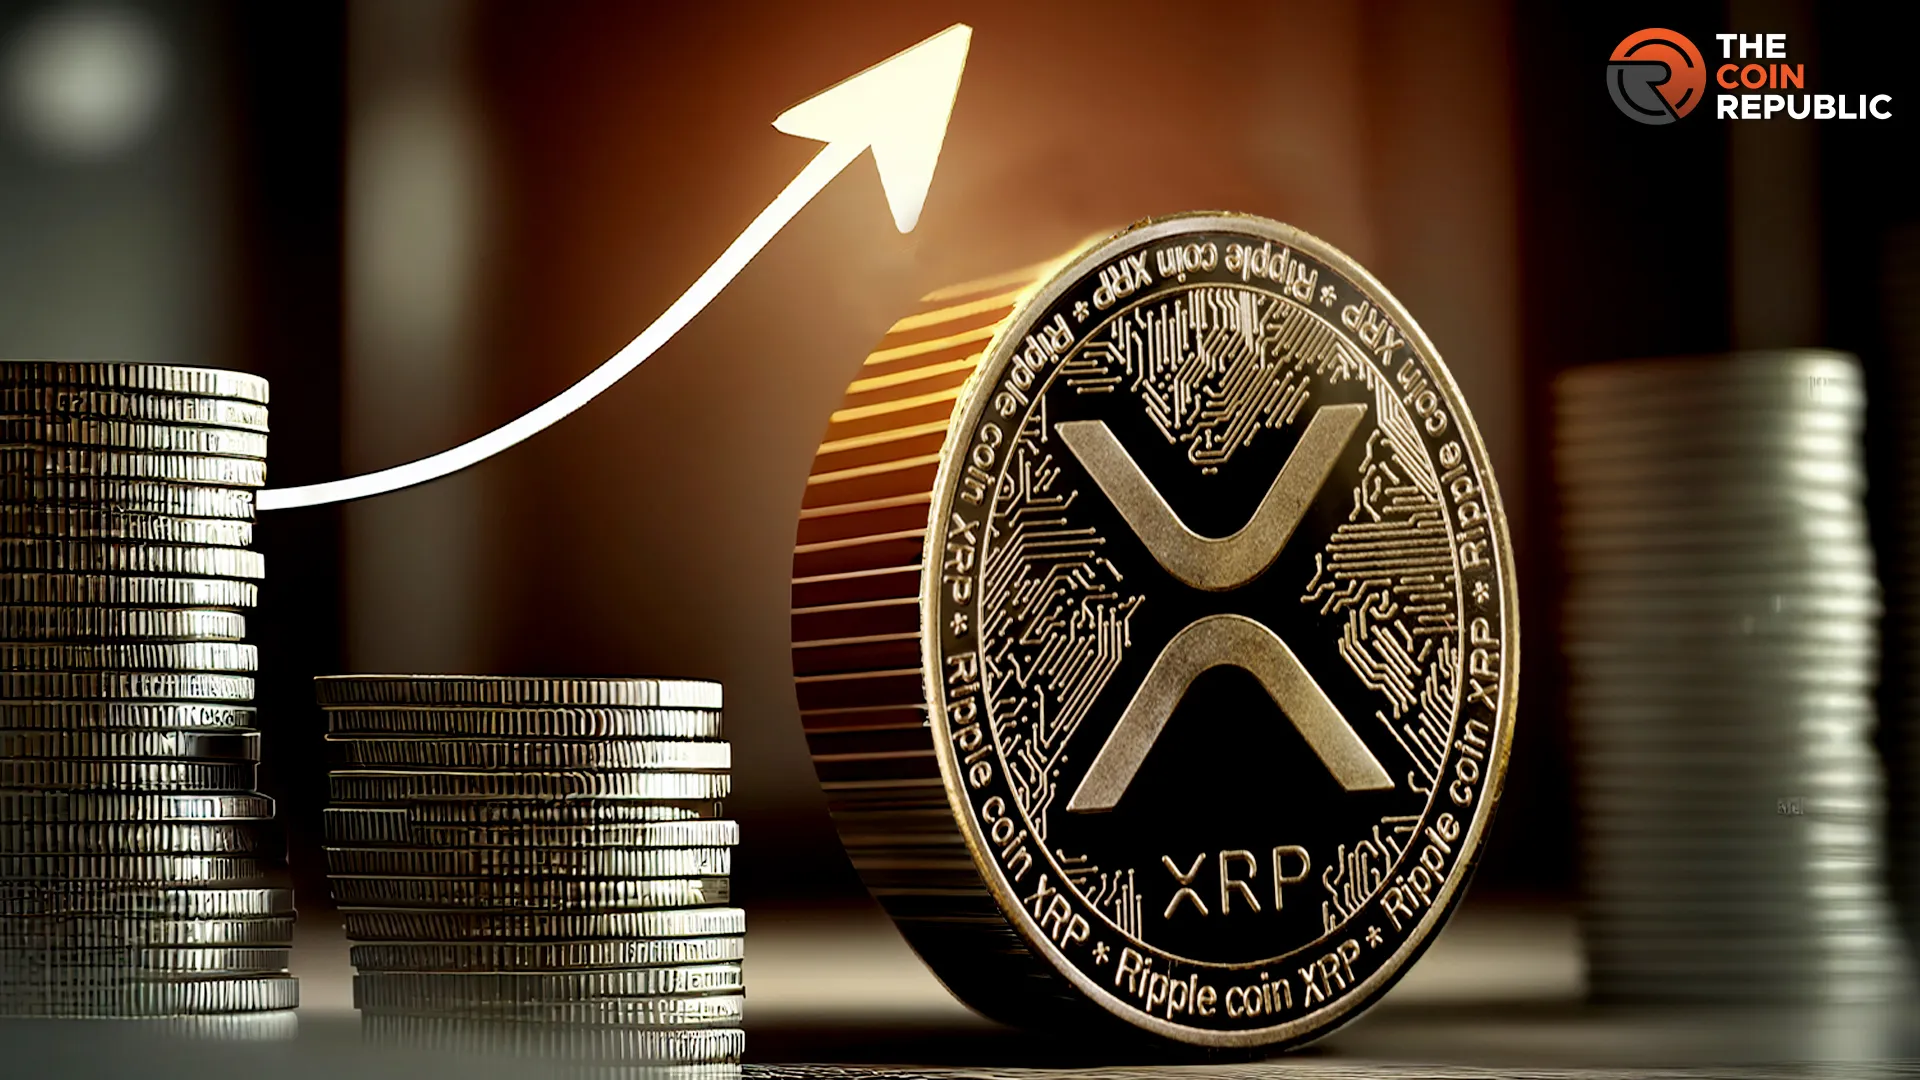 XRP Price & Volume Is On Decline Mode; Will It Rebound?